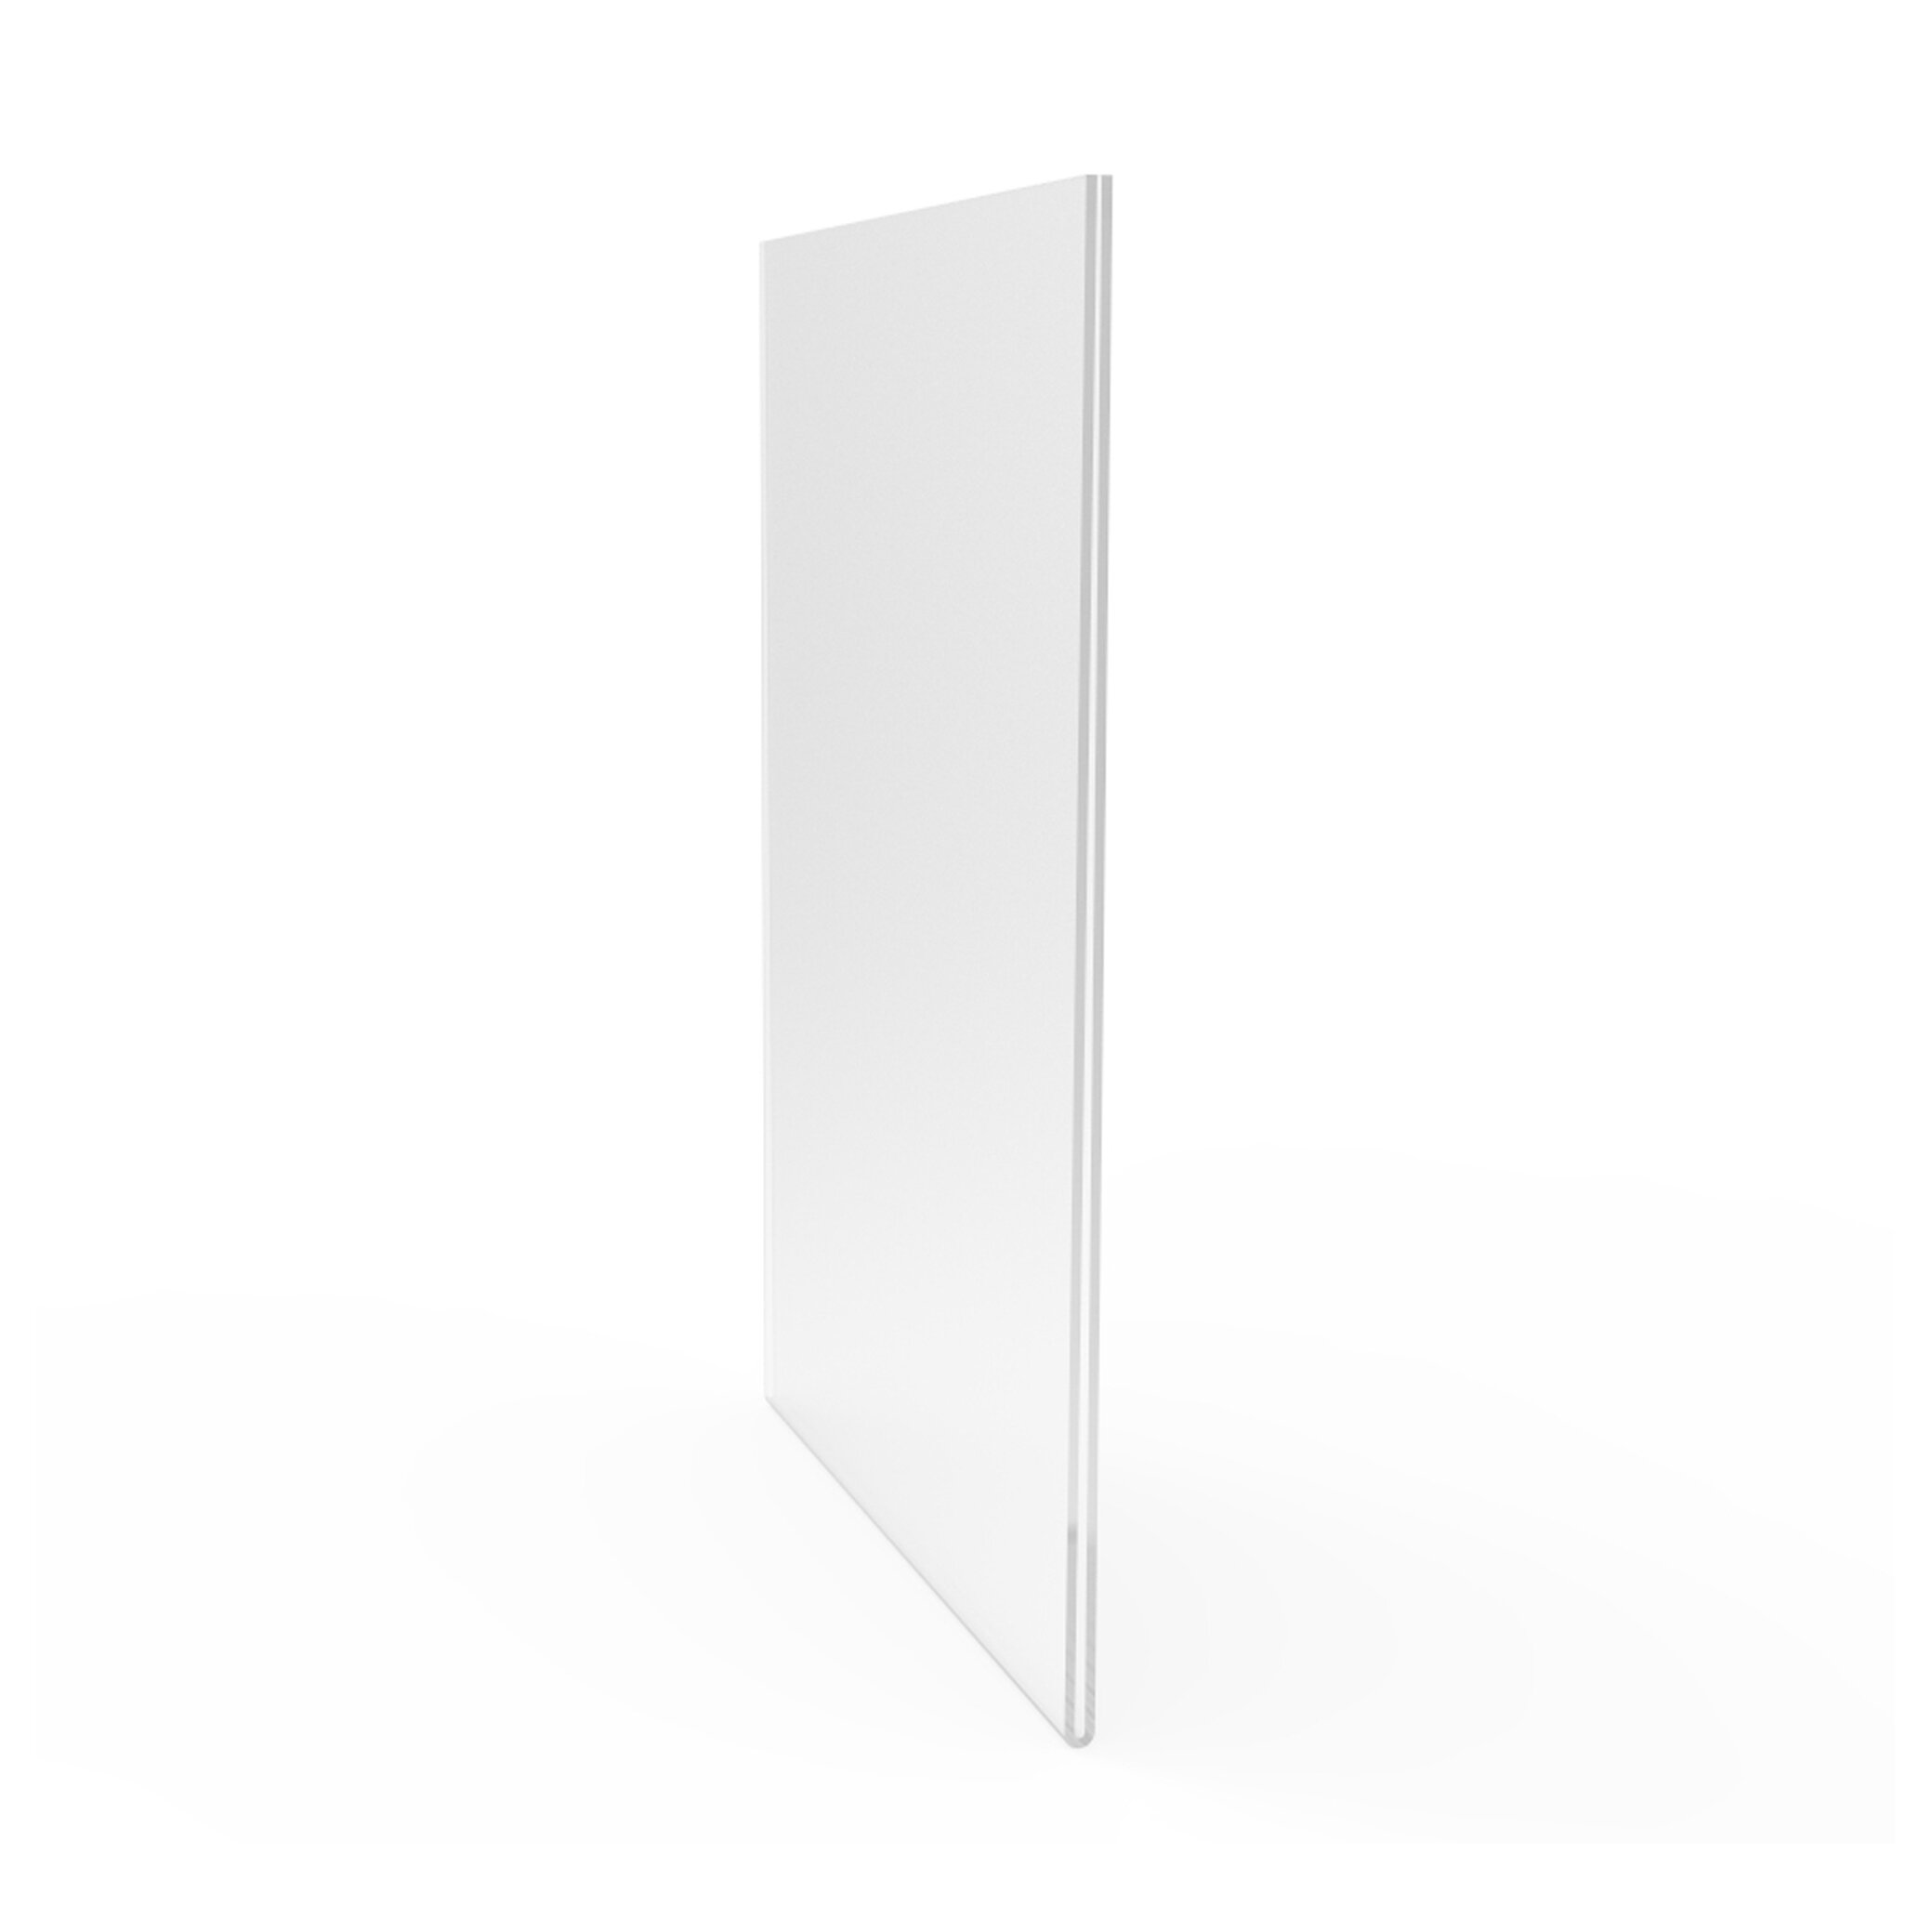 FixtureDisplays 1 disque rond en plexiglas acrylique transparent de 45,7  cm, épaisseur 1,9 cm, 4881,7 cm - 1,9 cm